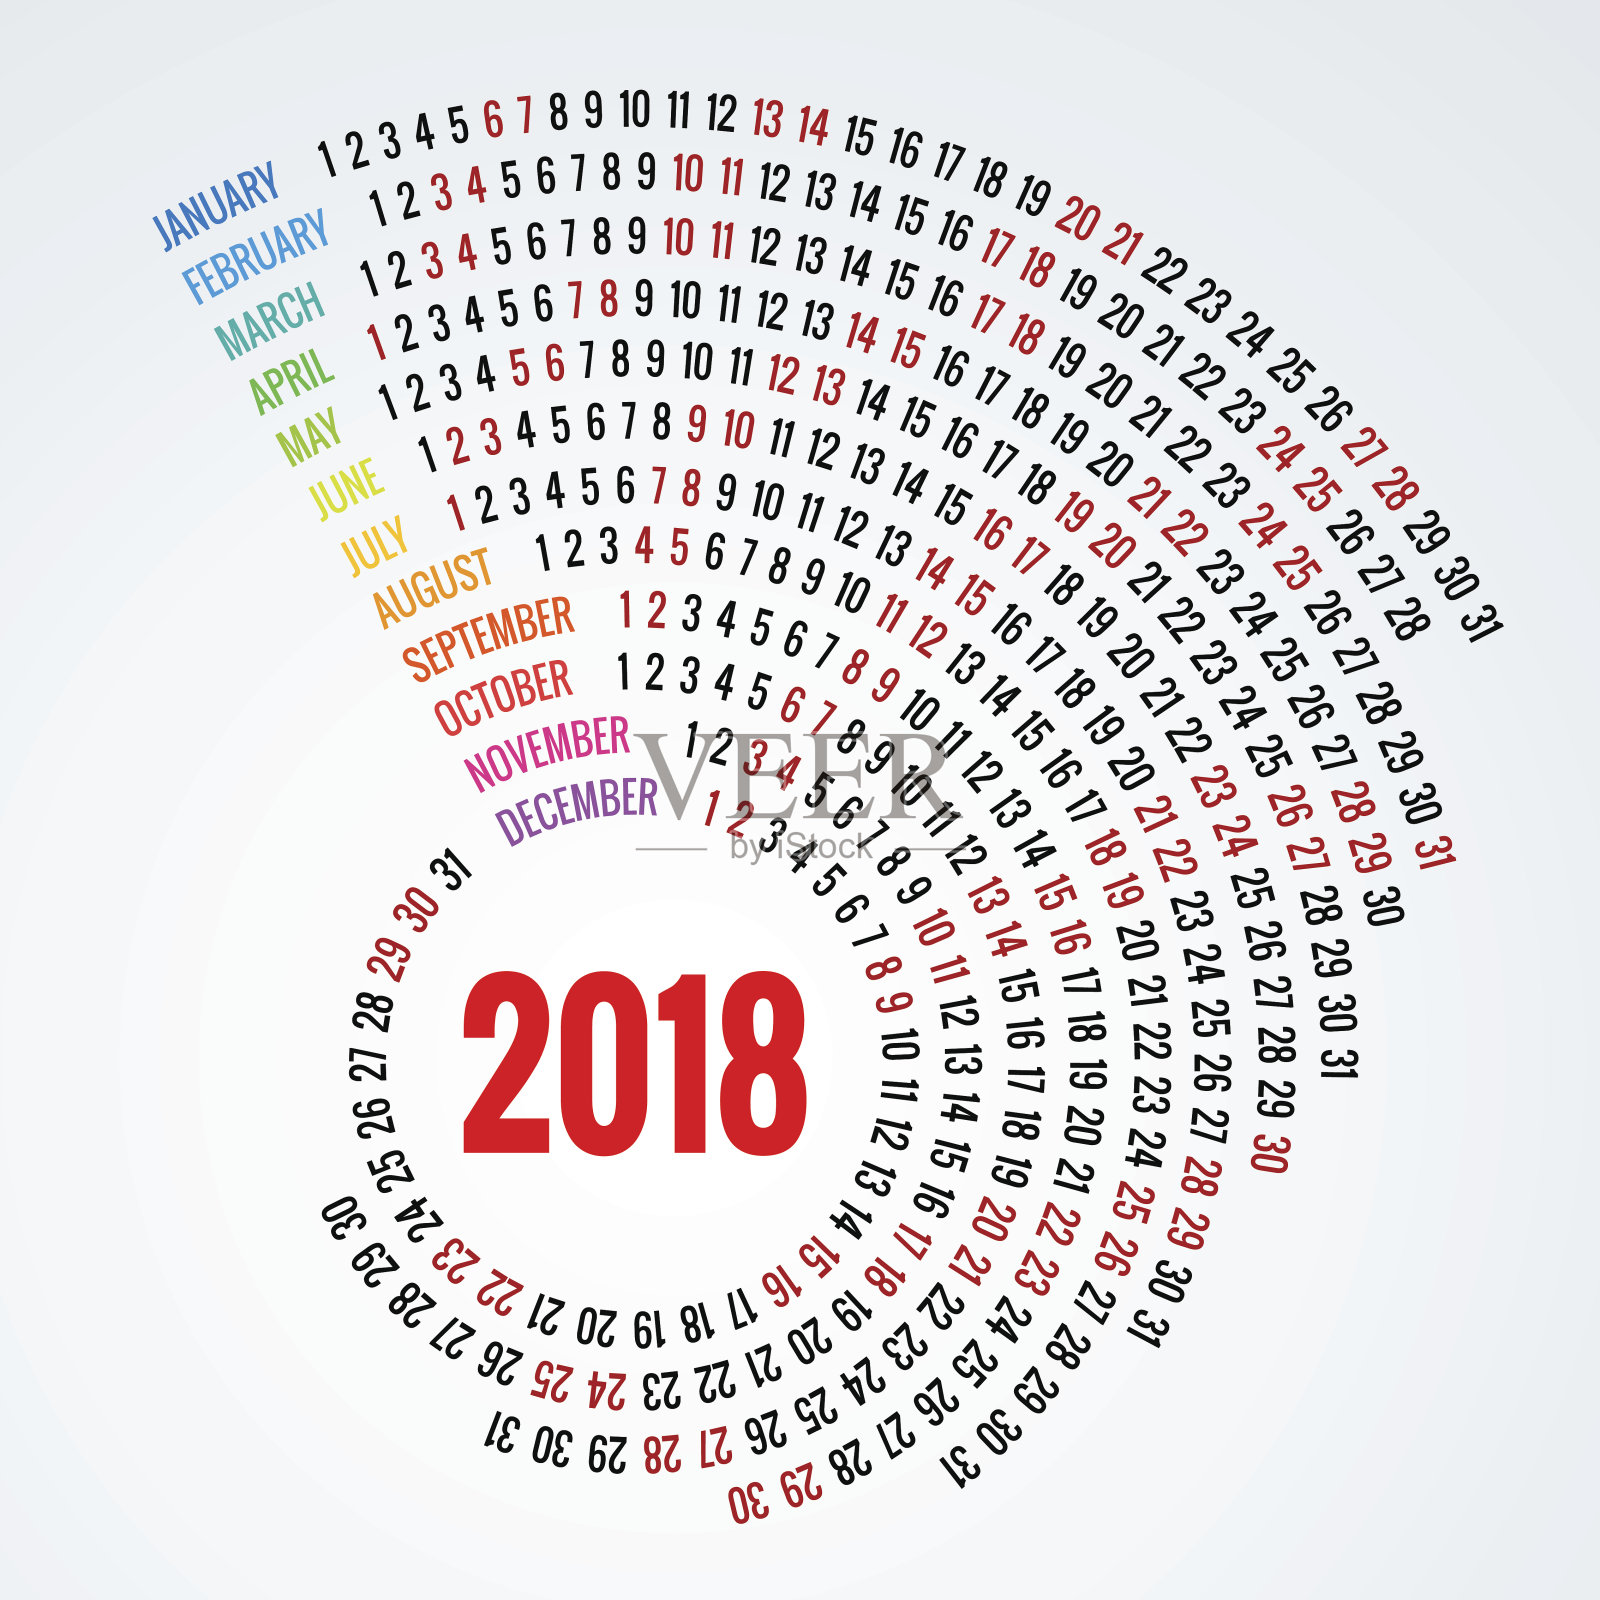 2018年日历打印模板螺旋日历套12个月圆形计划2018年。设计模板素材